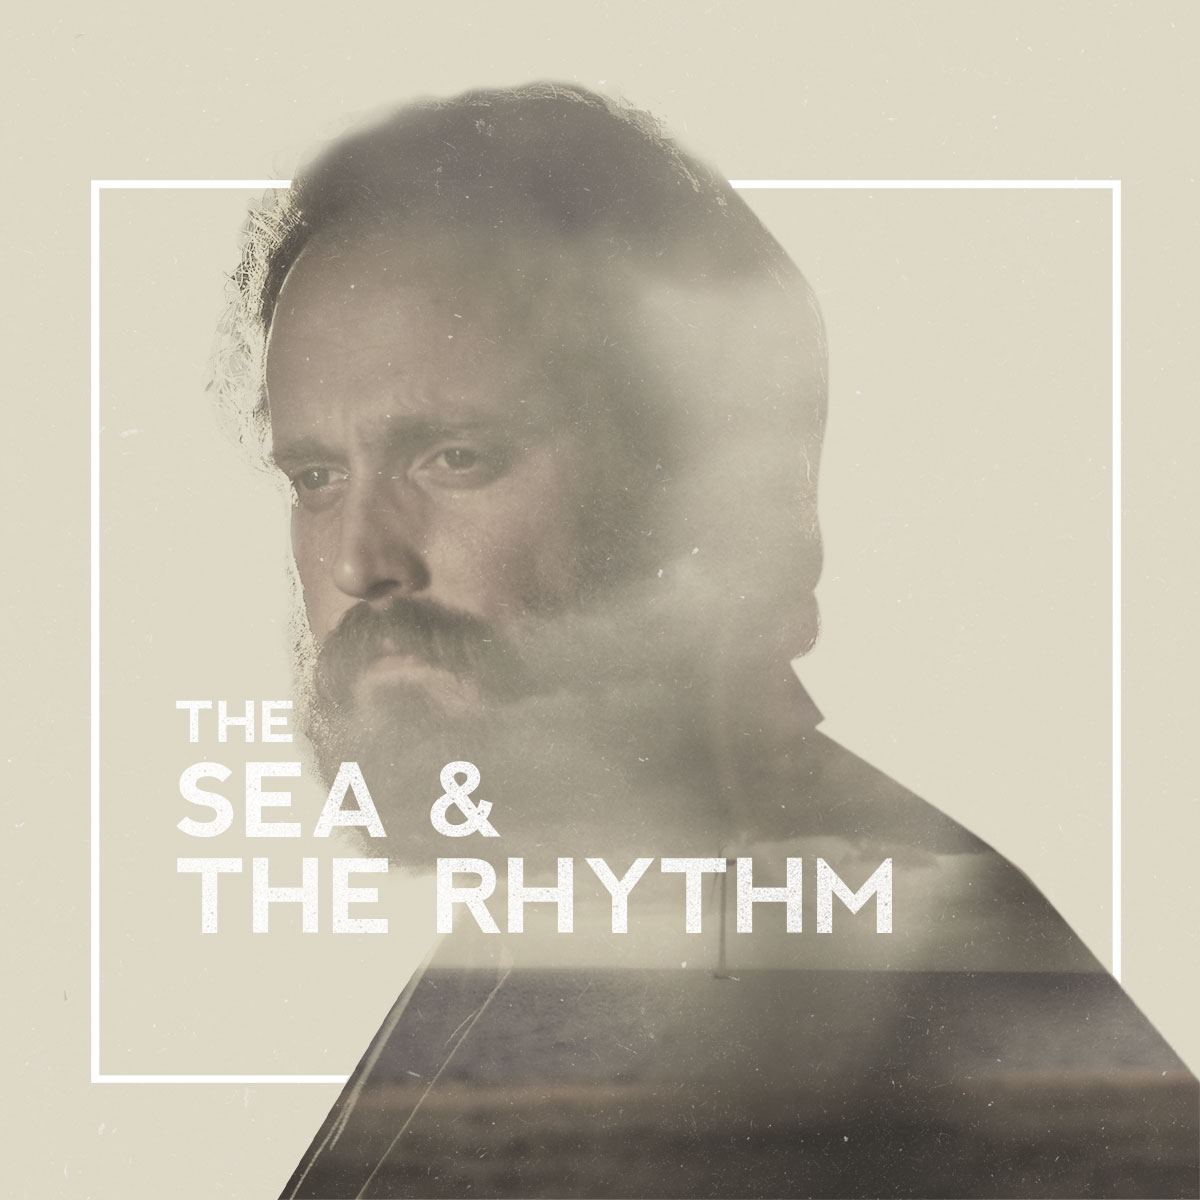 Sam-Beam-The-Sea-and-the-rhythm